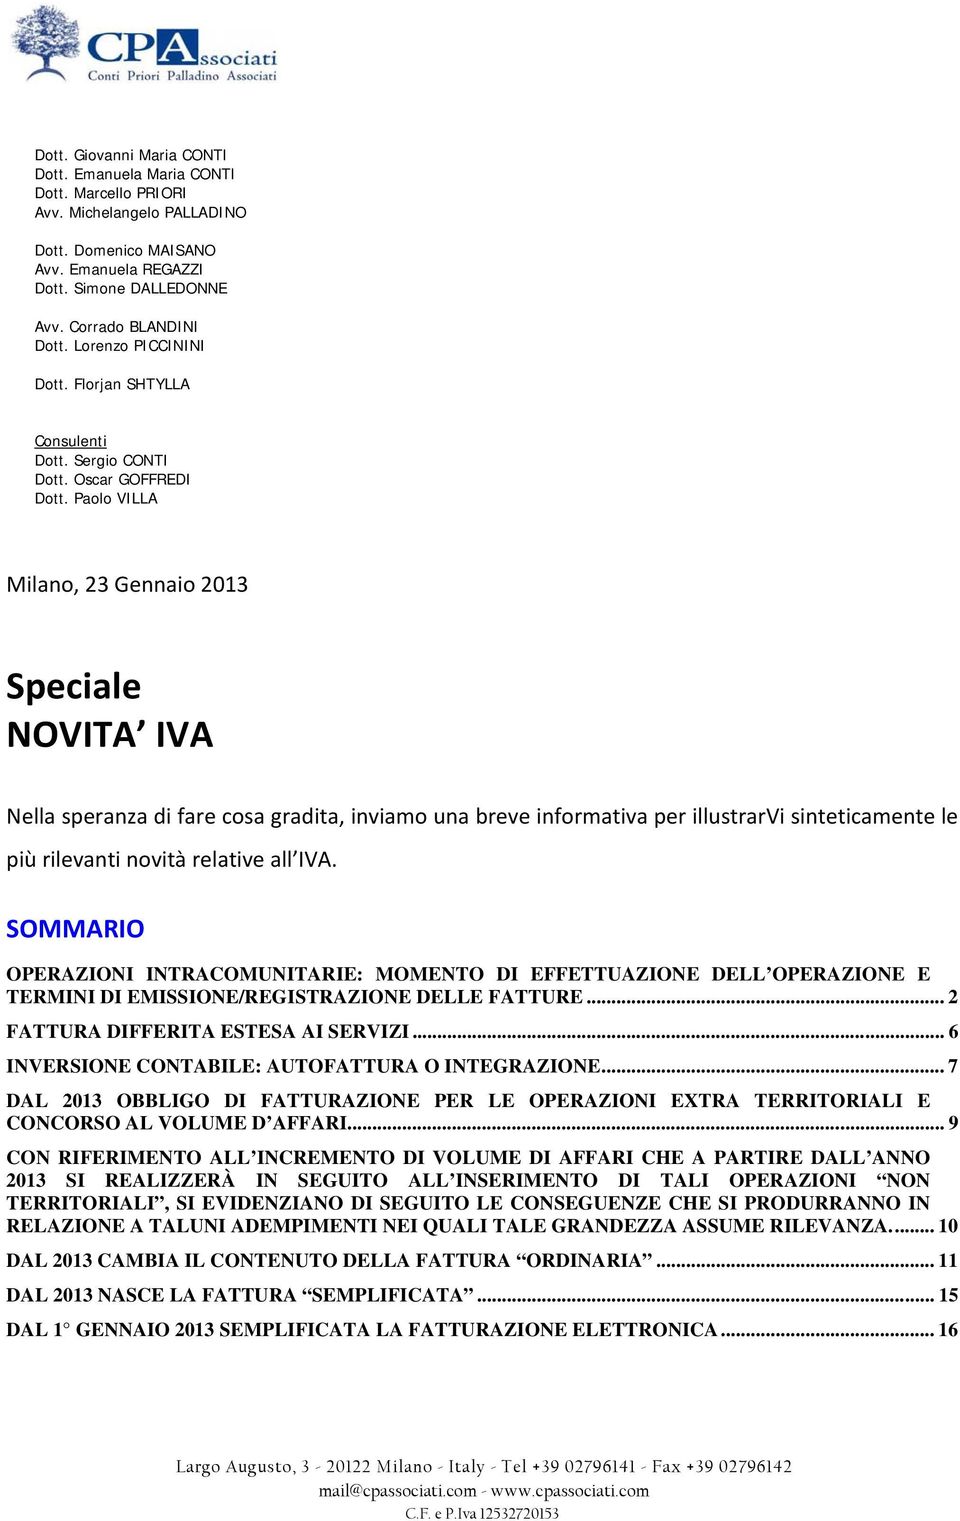 Paolo VILLA Milano, 23 Gennaio 2013 Speciale NOVITA IVA Nella speranza di fare cosa gradita, inviamo una breve informativa per illustrarvi sinteticamente le più rilevanti novità relative all IVA.